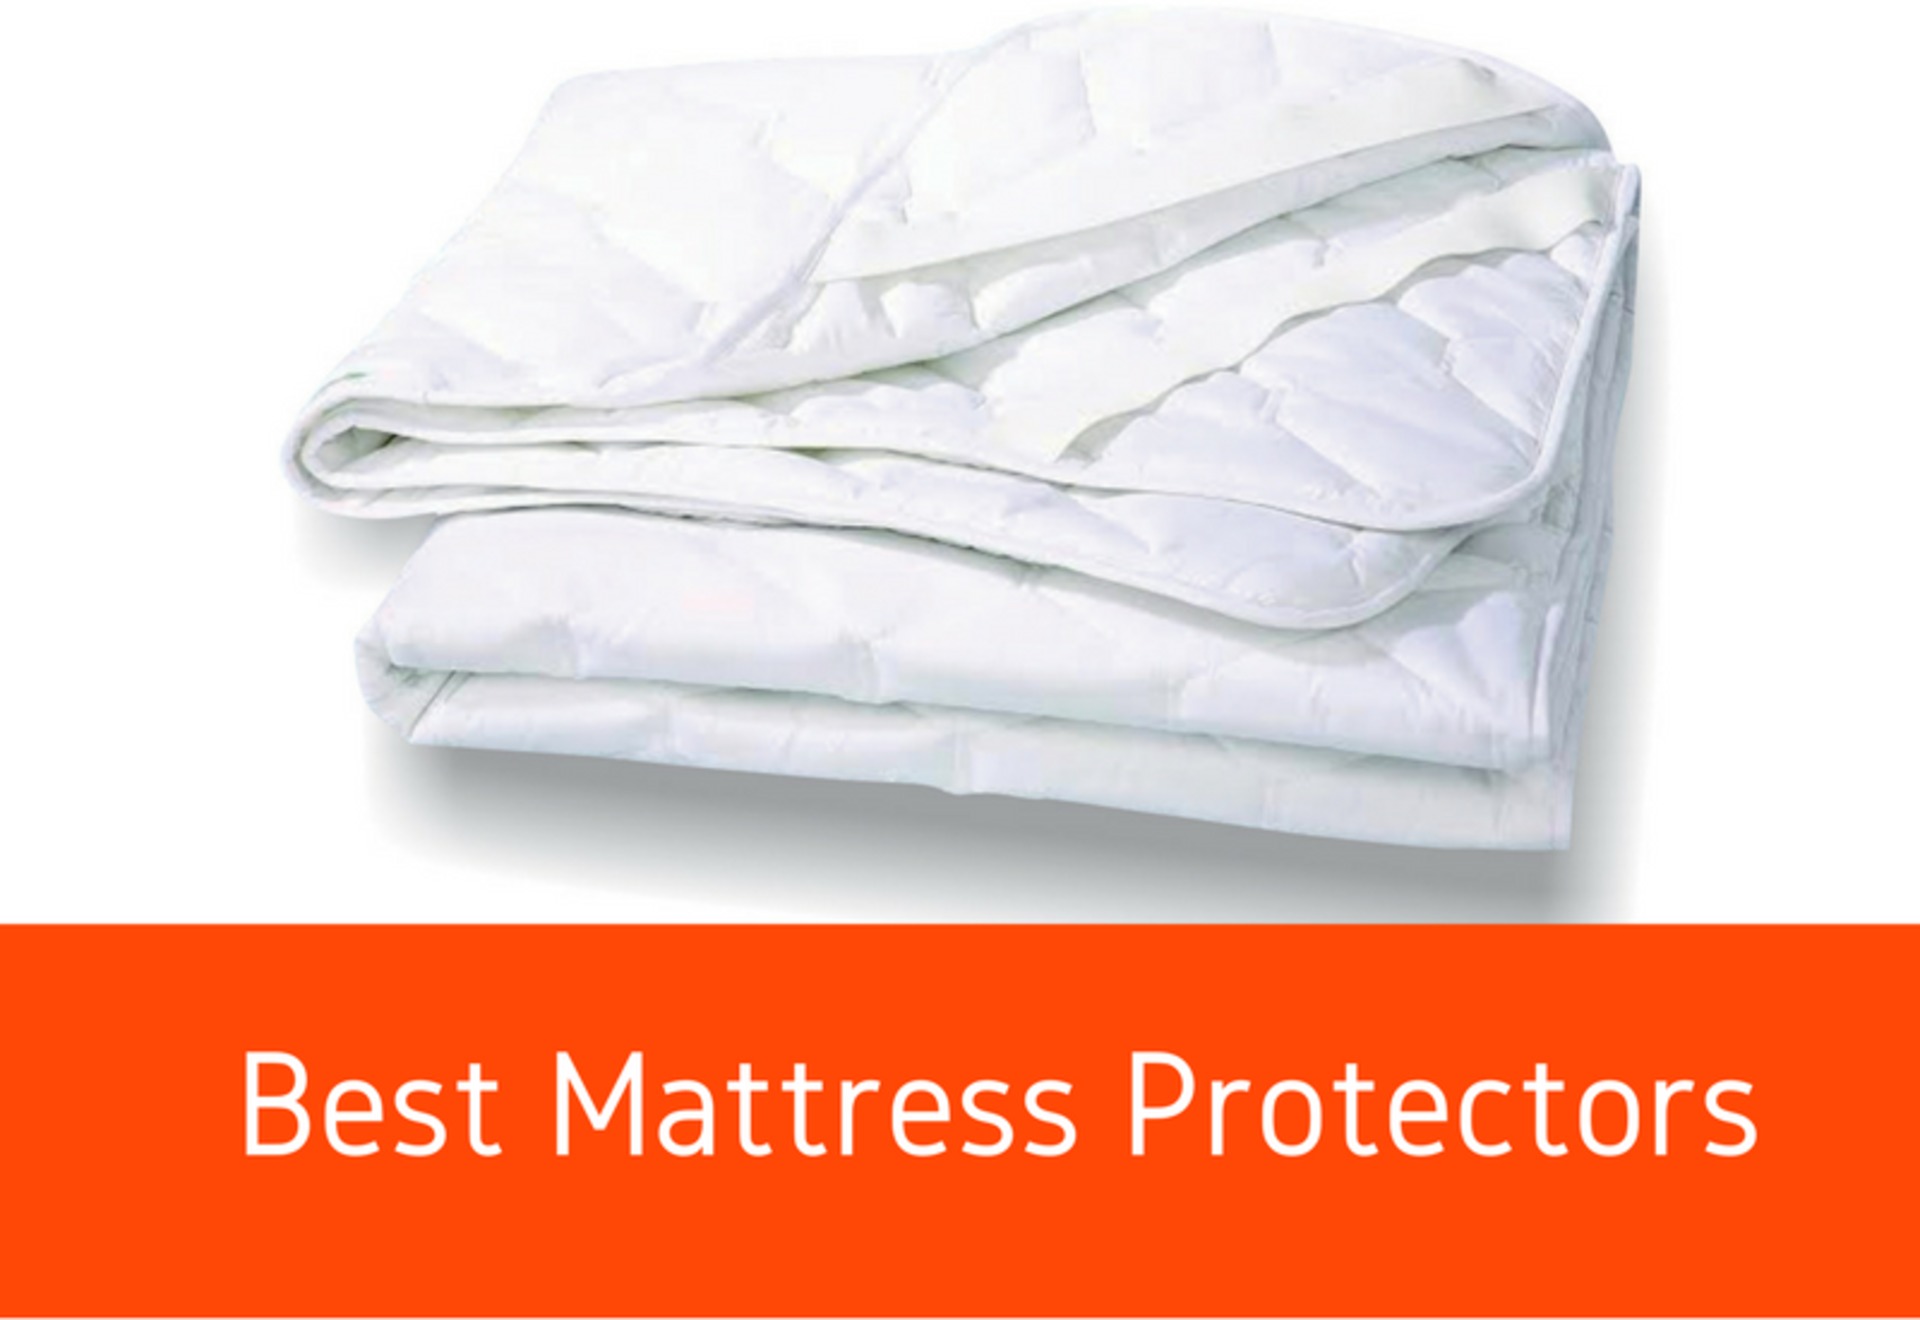 mtammy - best-mattress-protectors-fresh-best-mattress-guides-reviews-2017-my-bed-mattress-of-best-mattress-protectors